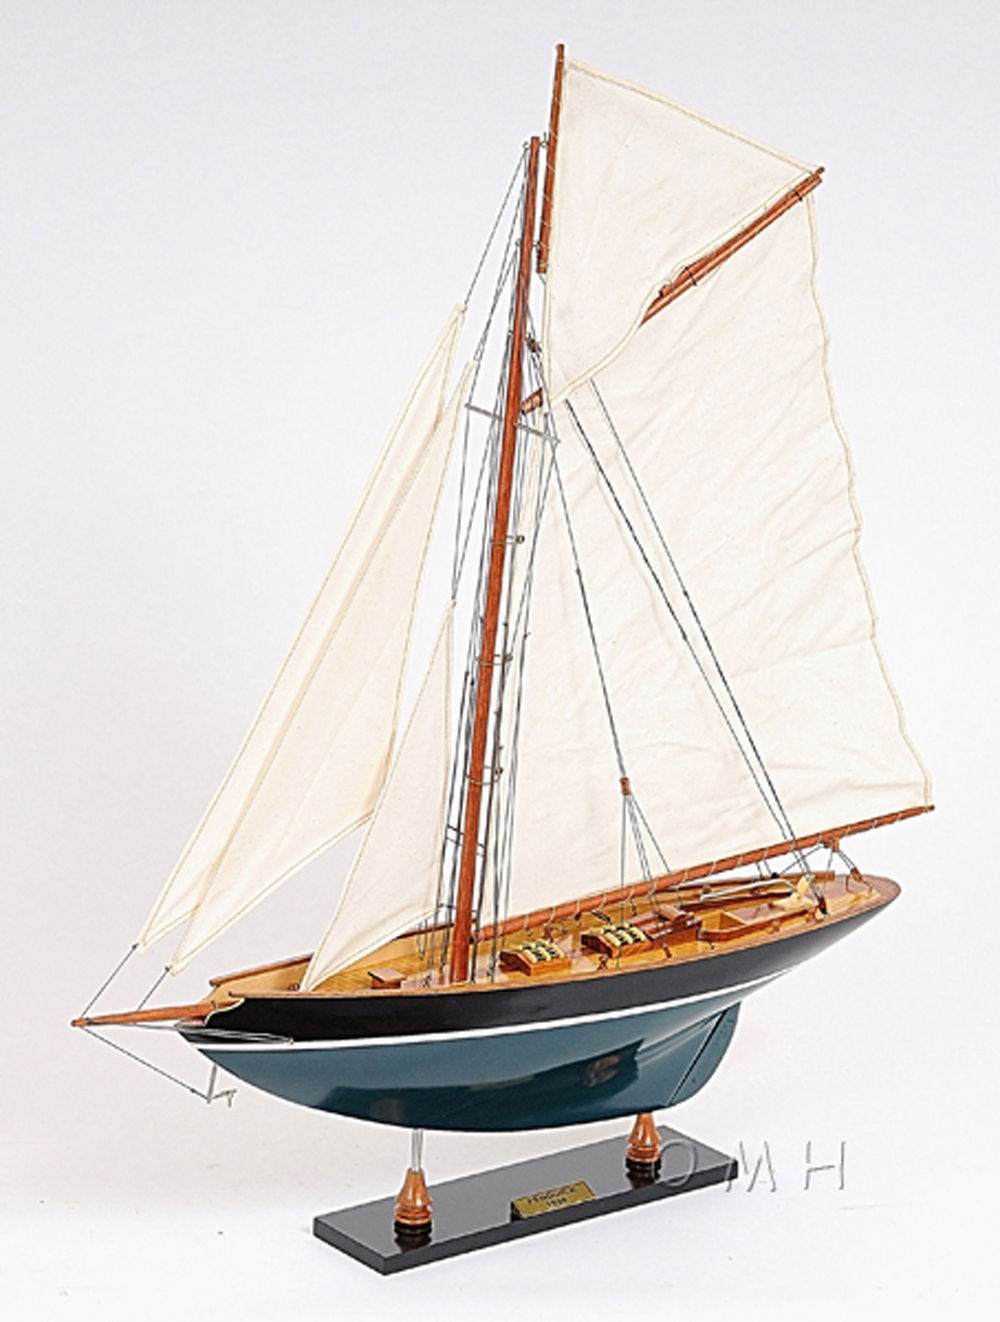 SAILINGSTORY Wooden Sailboat Decor Sailboat Model Boat Decor Ship